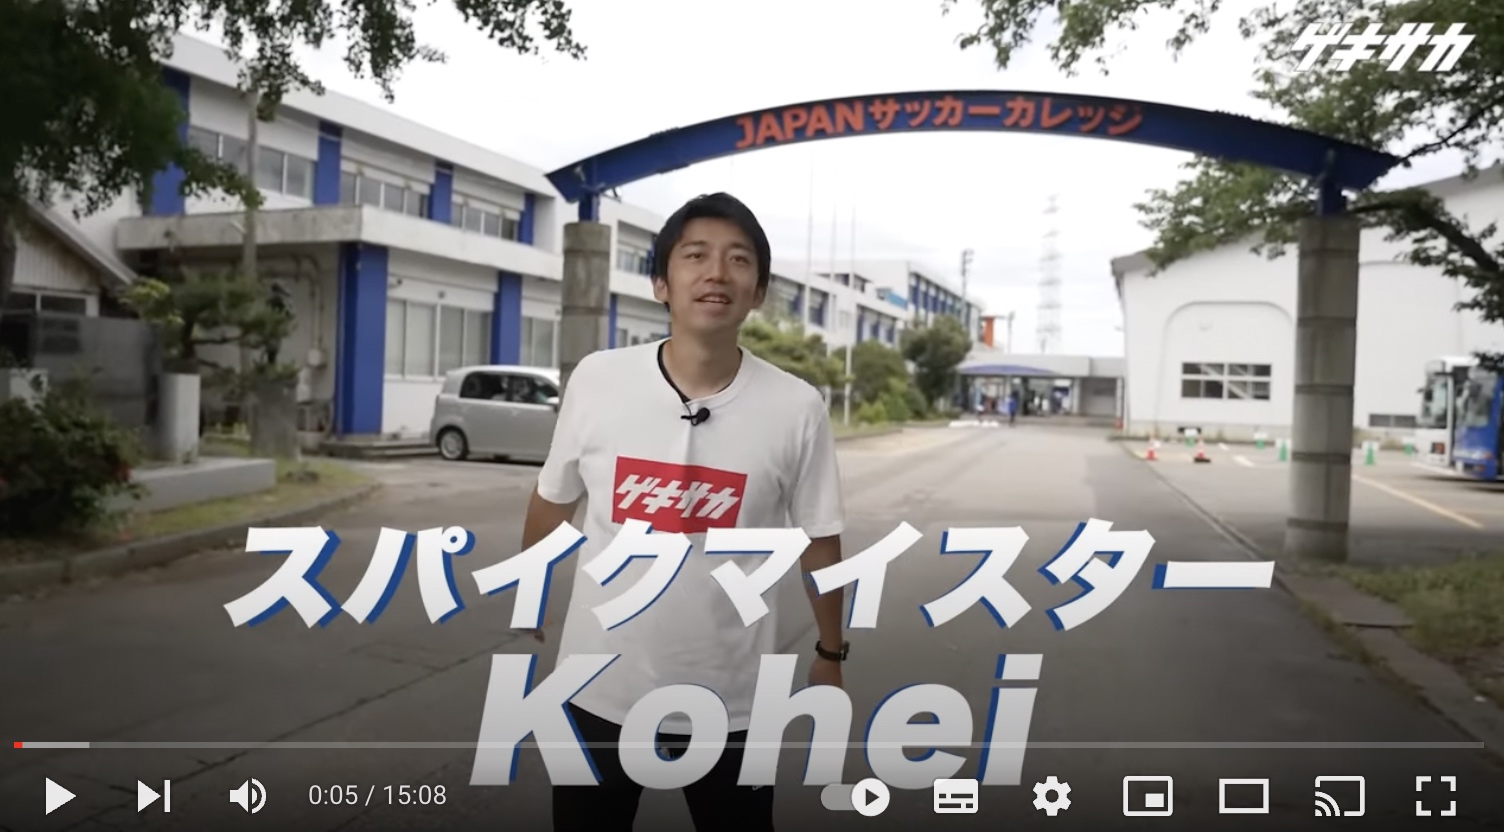 「ゲキサカ」のYouTubeチャンネルで紹介された、日本で唯一のサッカー総合専門学校「JAPANサッカーカレッジ」の動画に多くの反響が！│広告主：JAPANサッカーカレッジ